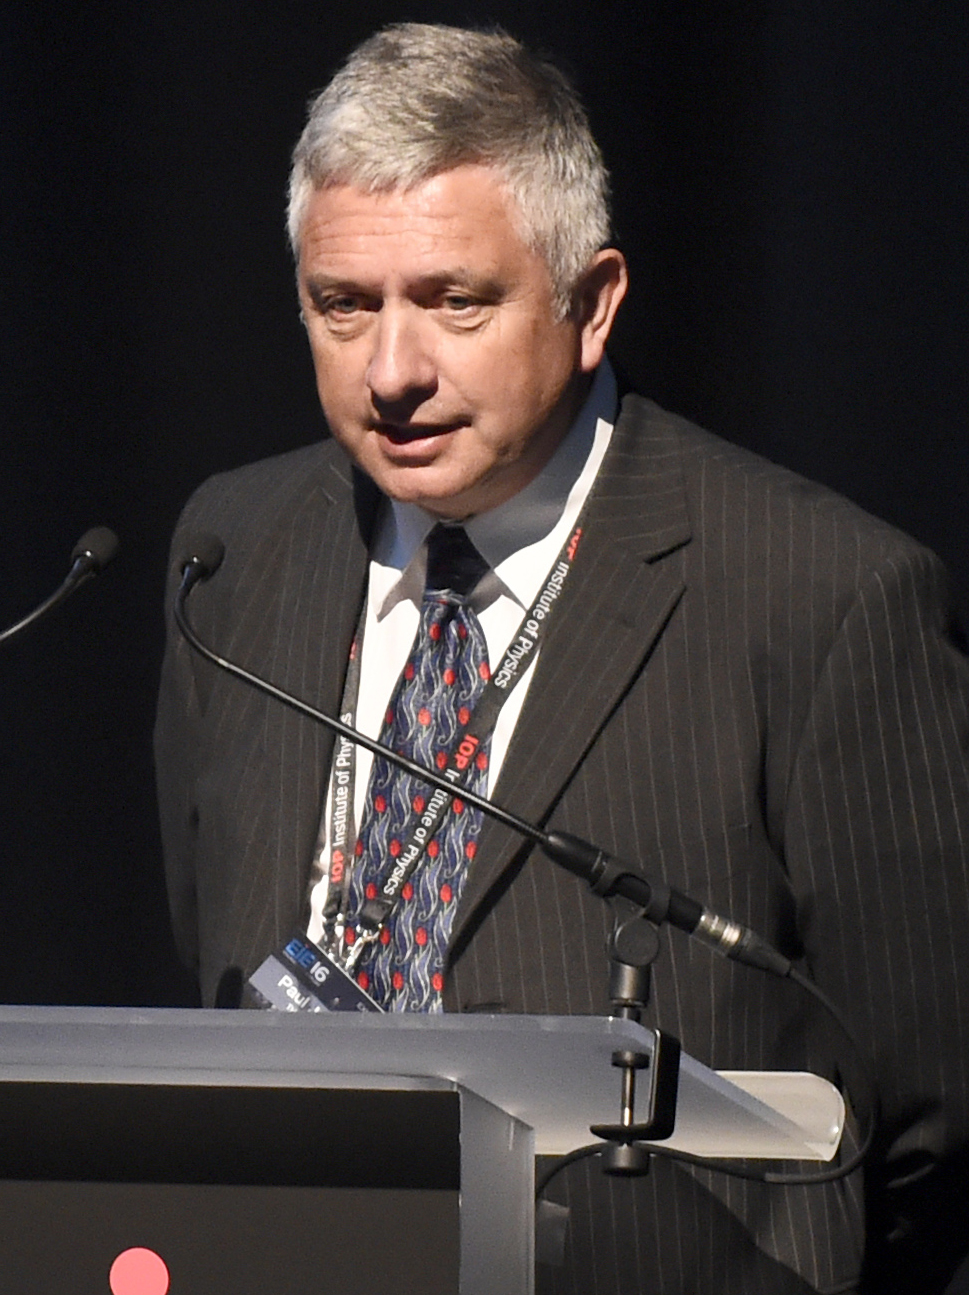 Paul Jonsen speaking at EIE 2016